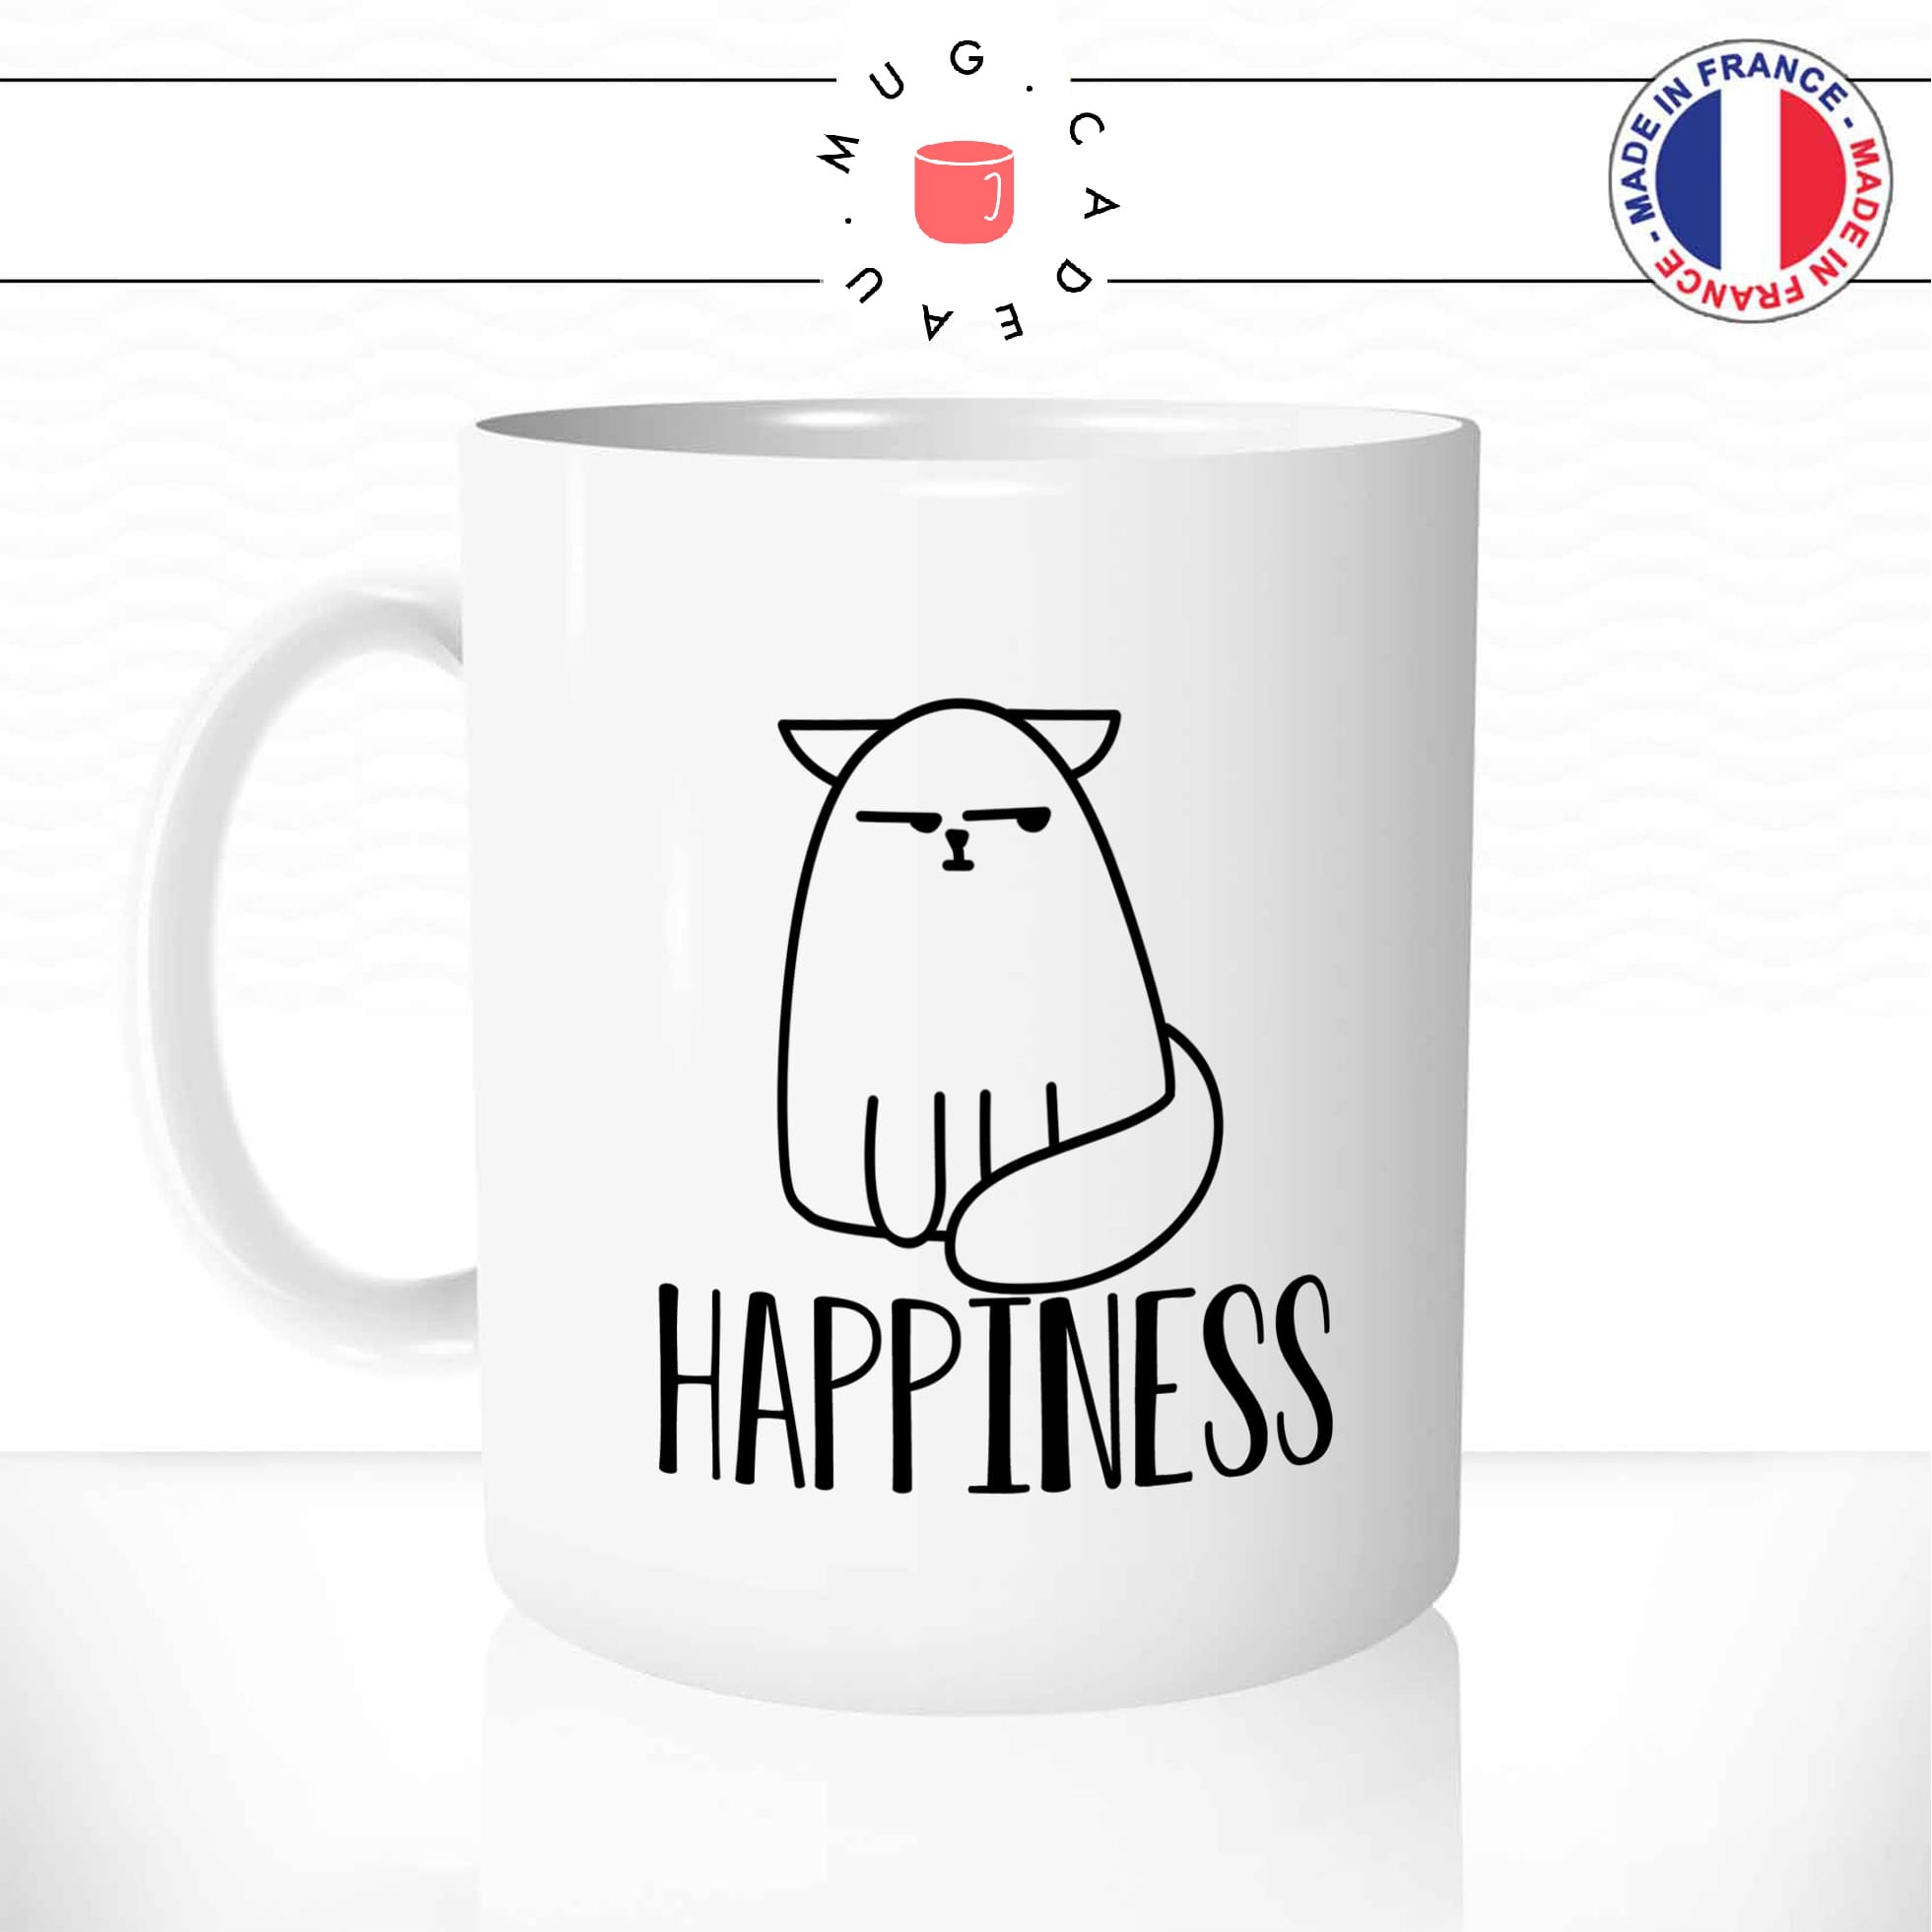 mug-tasse-chat-chaton-blanc-cat-happiness-grognon-pas-content-heureux-ironique-drole-humour-idee-cadeau-cool-fun-original-personnalisé1